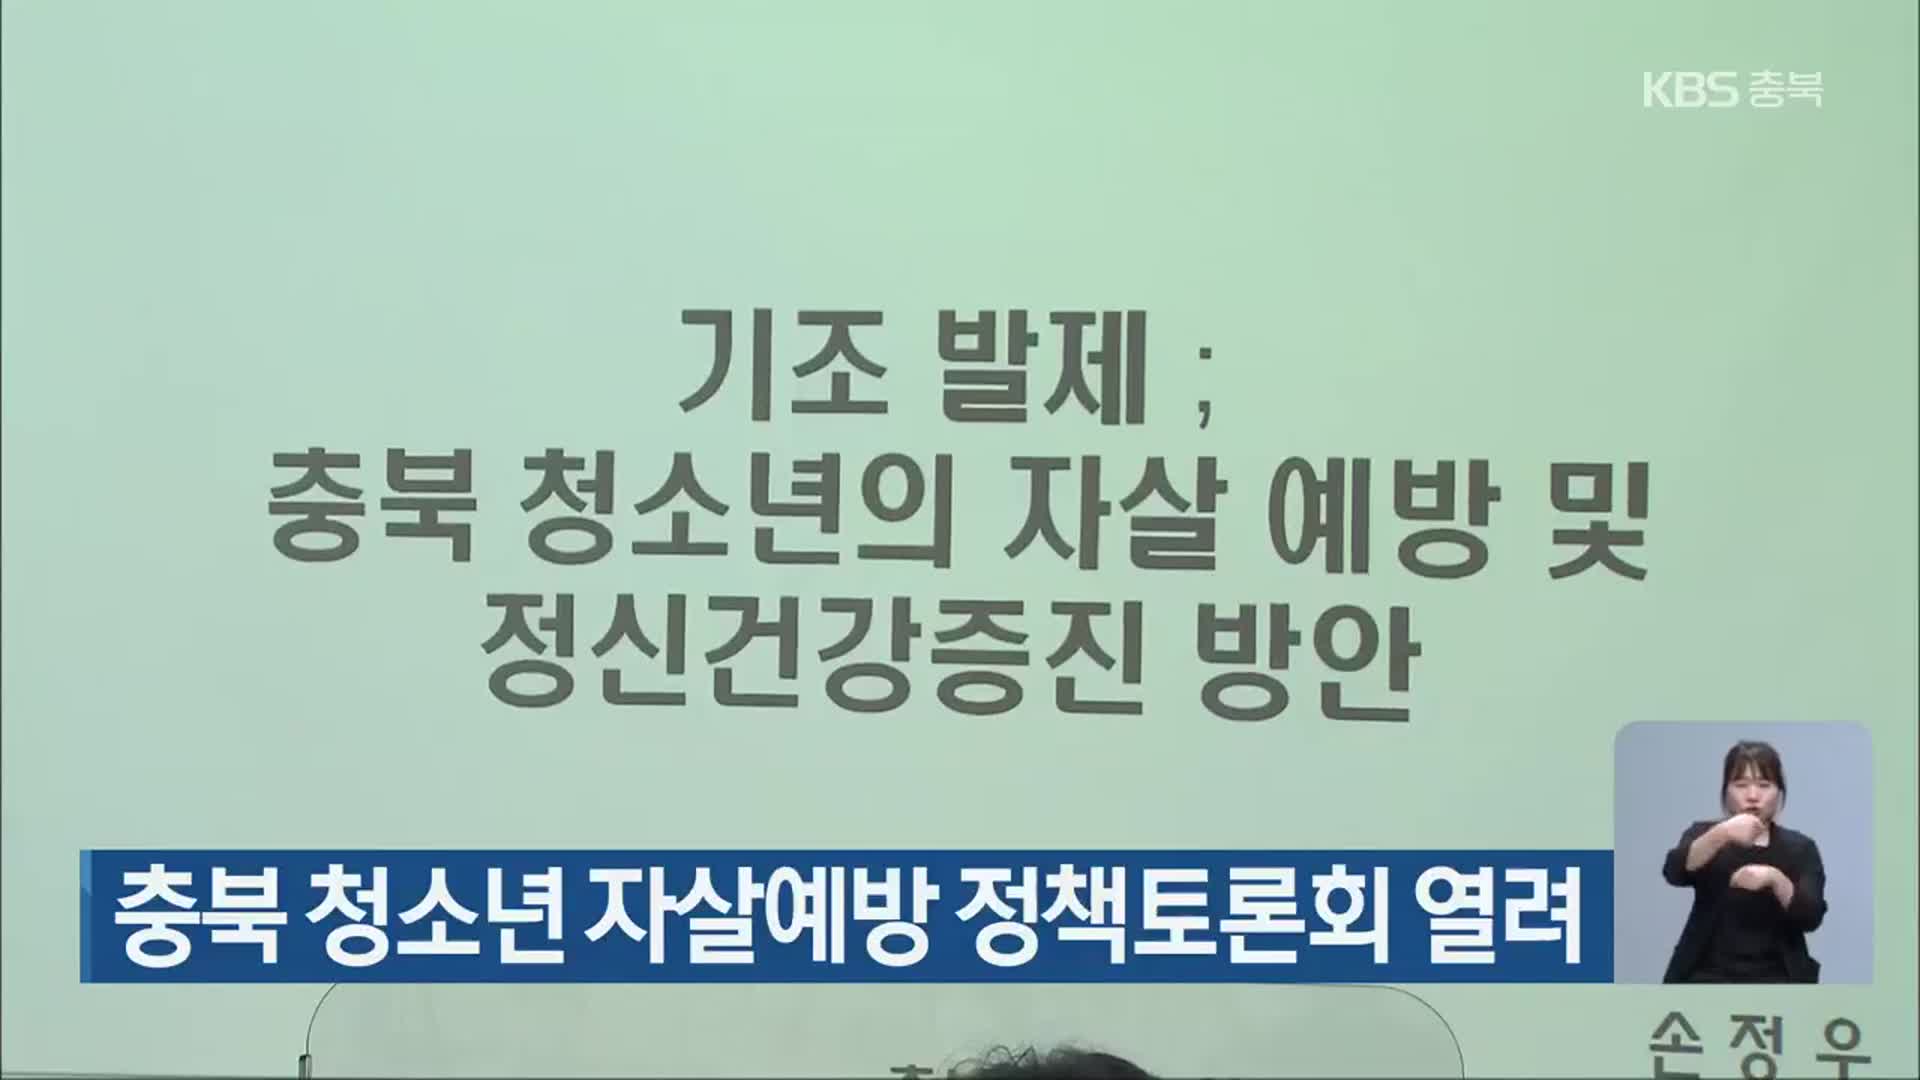 충북 청소년 자살예방 정책토론회 열려